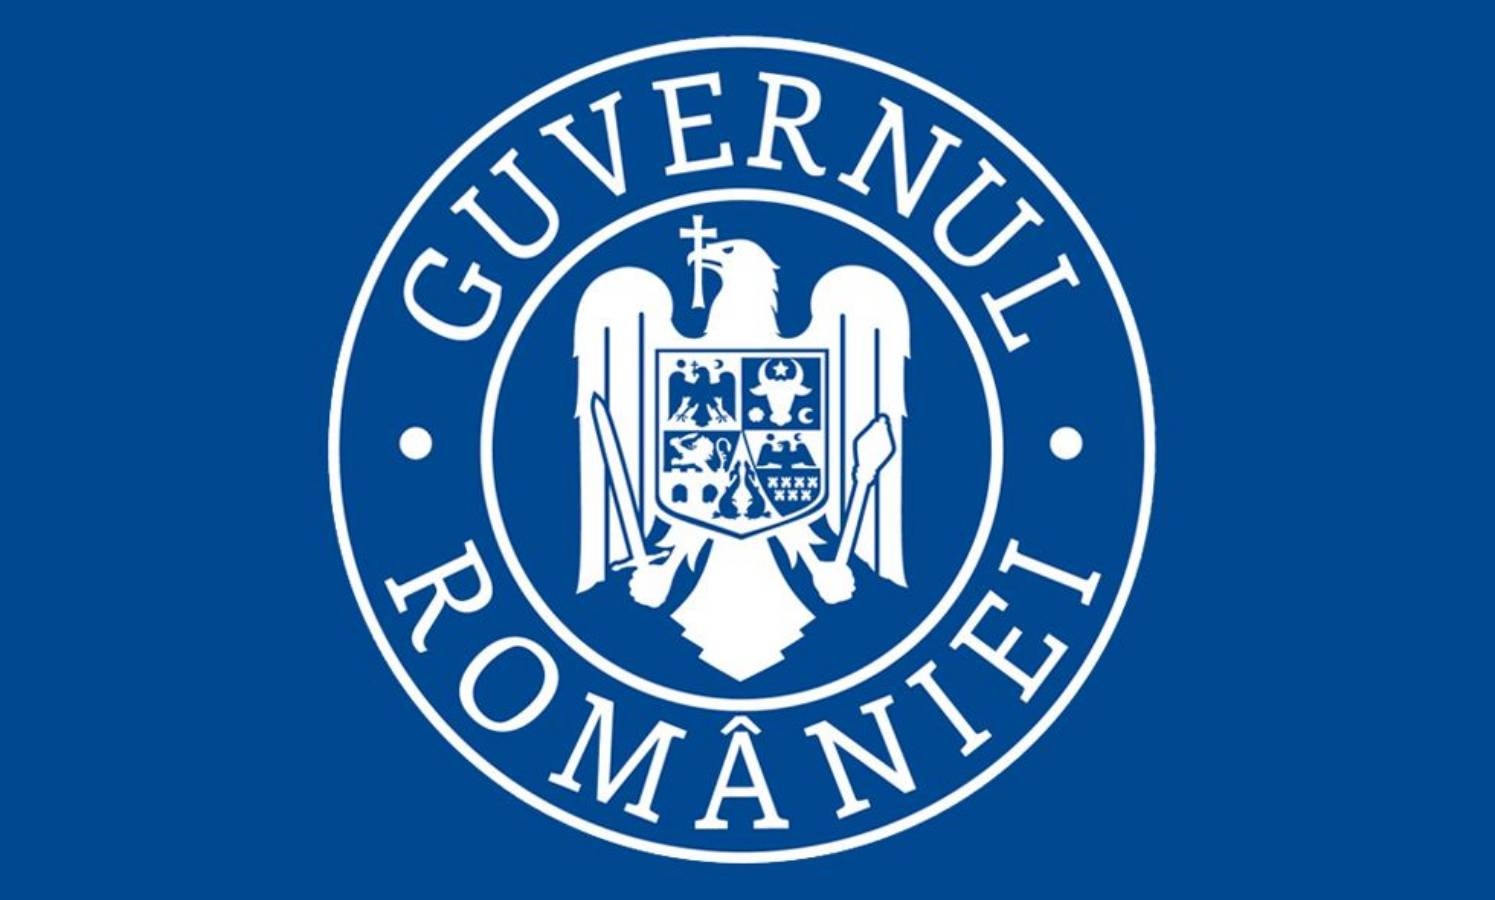 La transmission du coronavirus par le gouvernement roumain